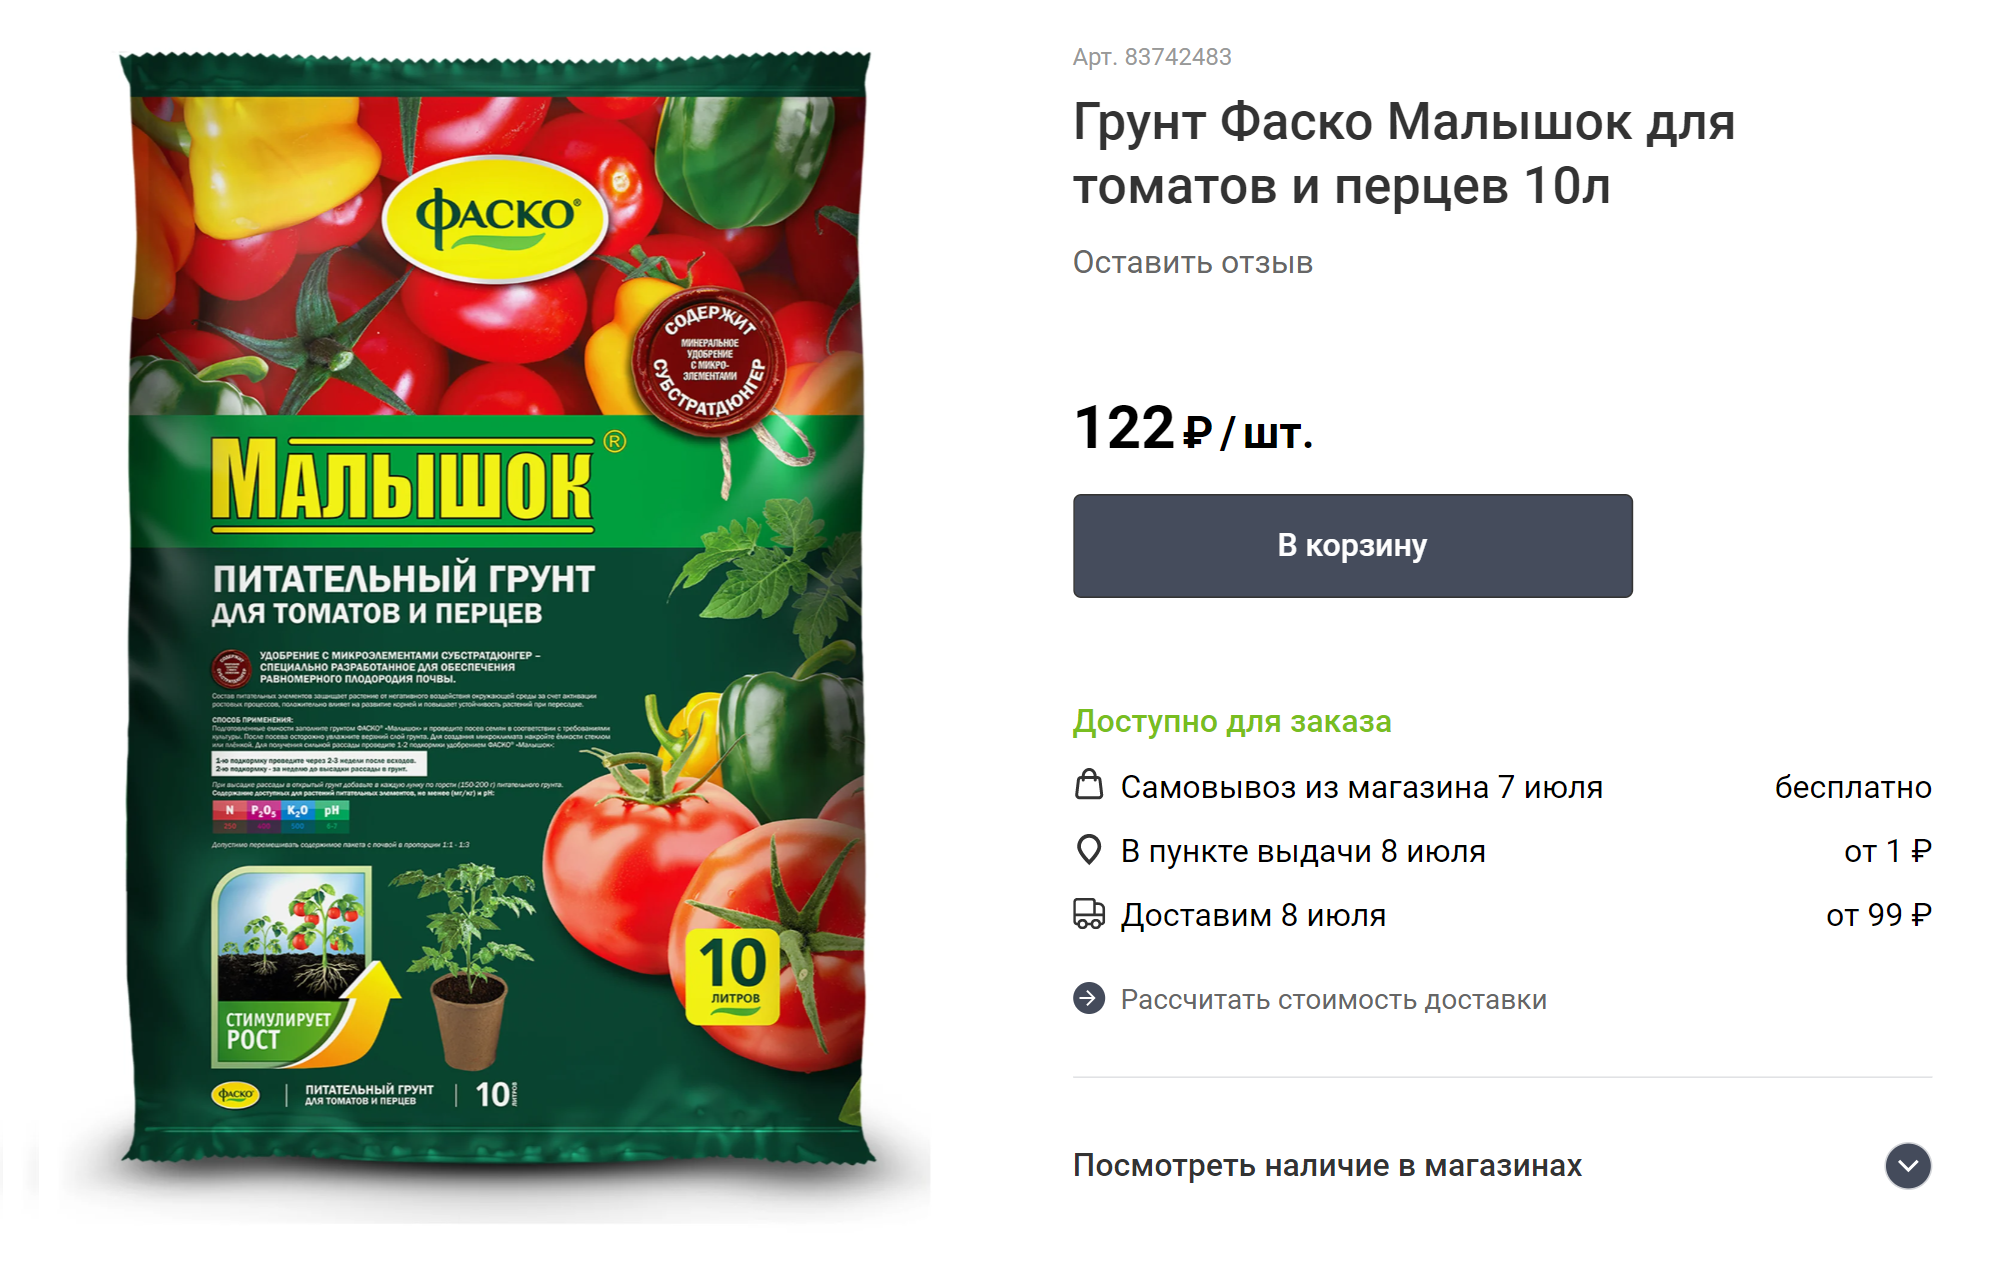 Вот проверенный грунт. Хоть на упаковке написано «для томатов и перцев», я брала его для всей рассады. Источник: leroymerlin.ru